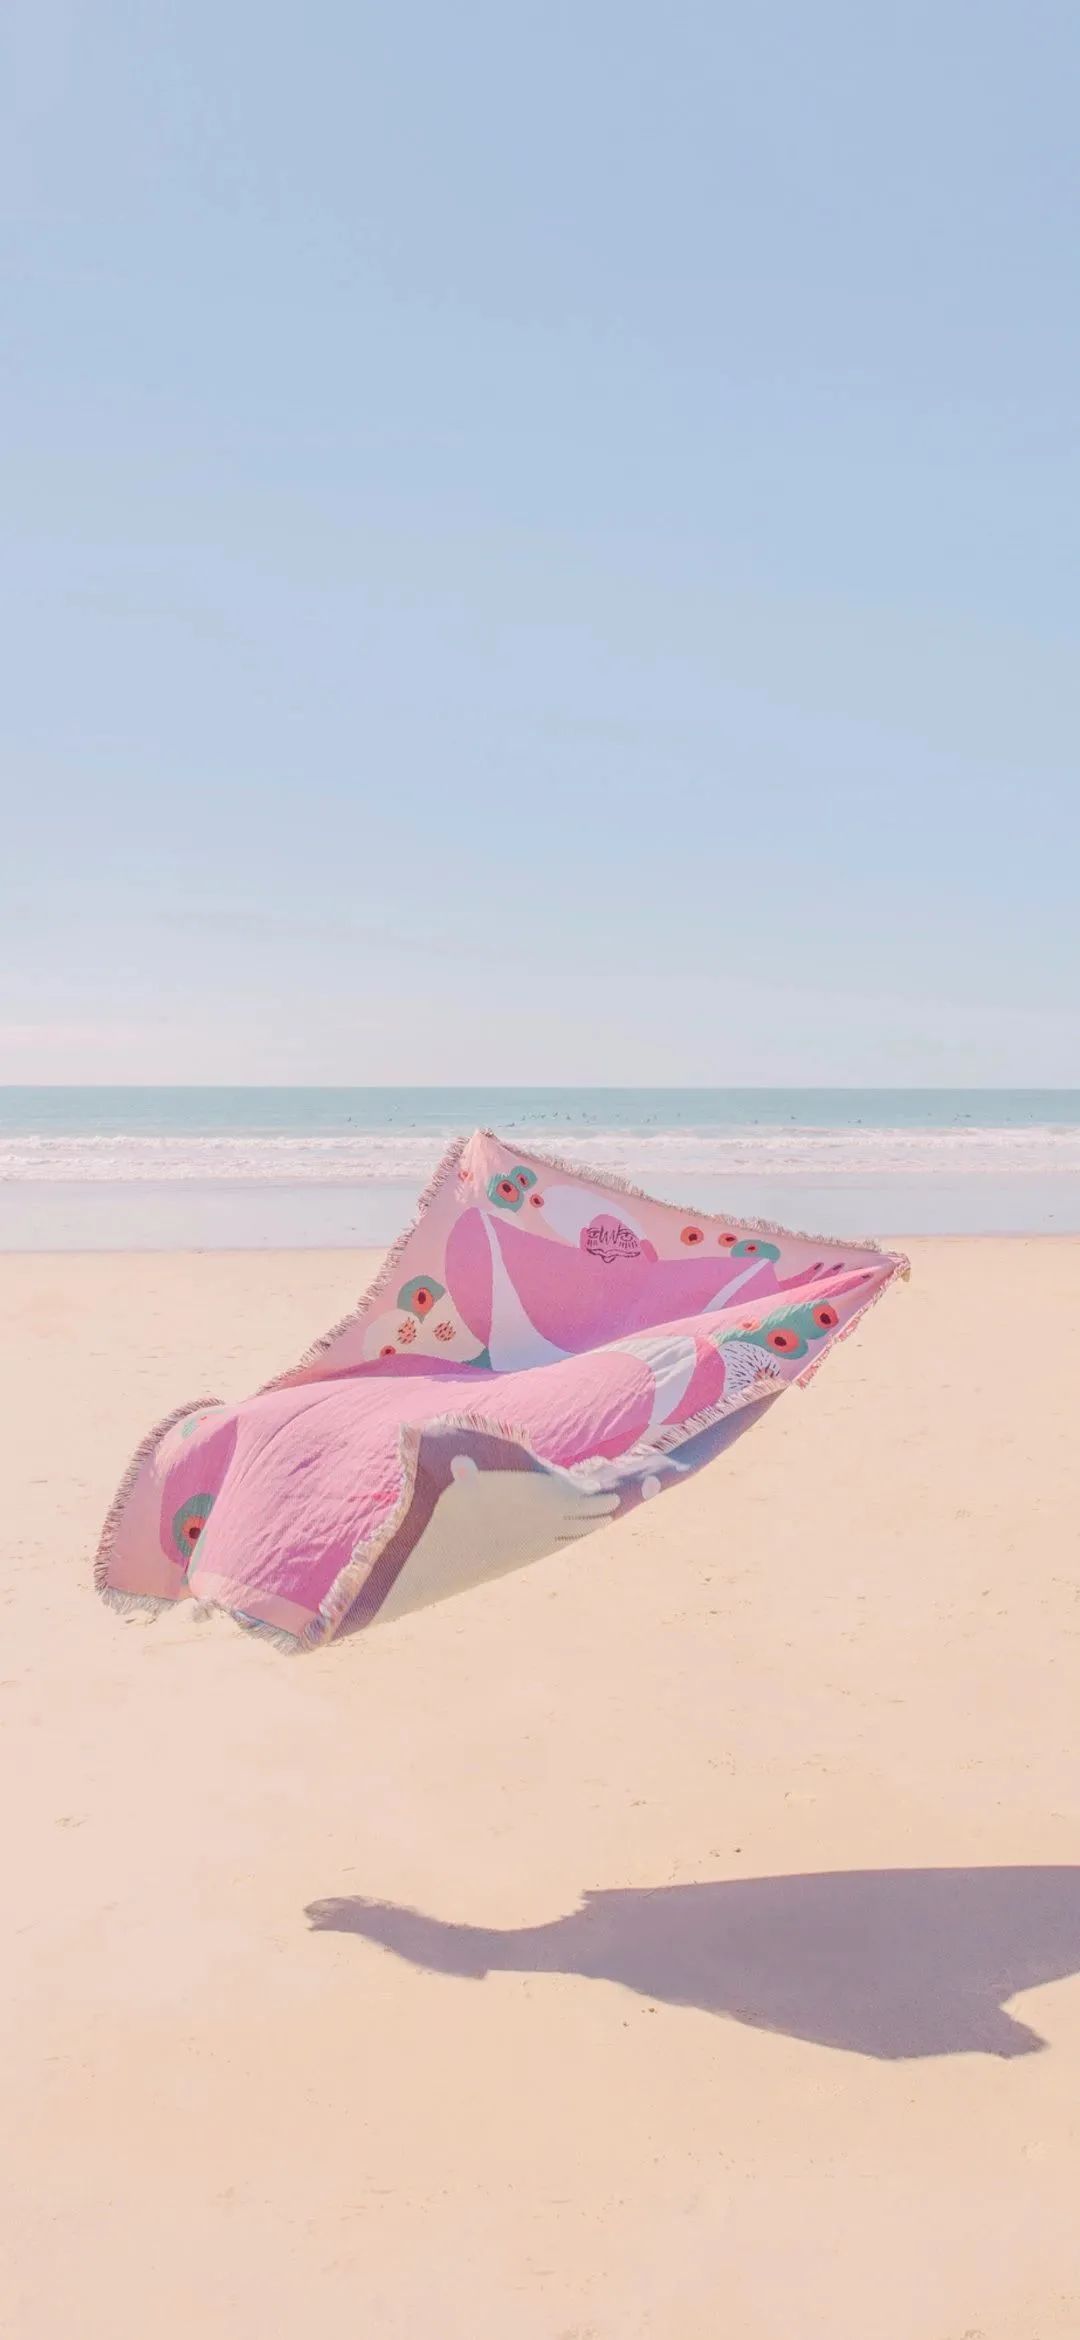 沙滩上飘起的粉色被子手机壁纸